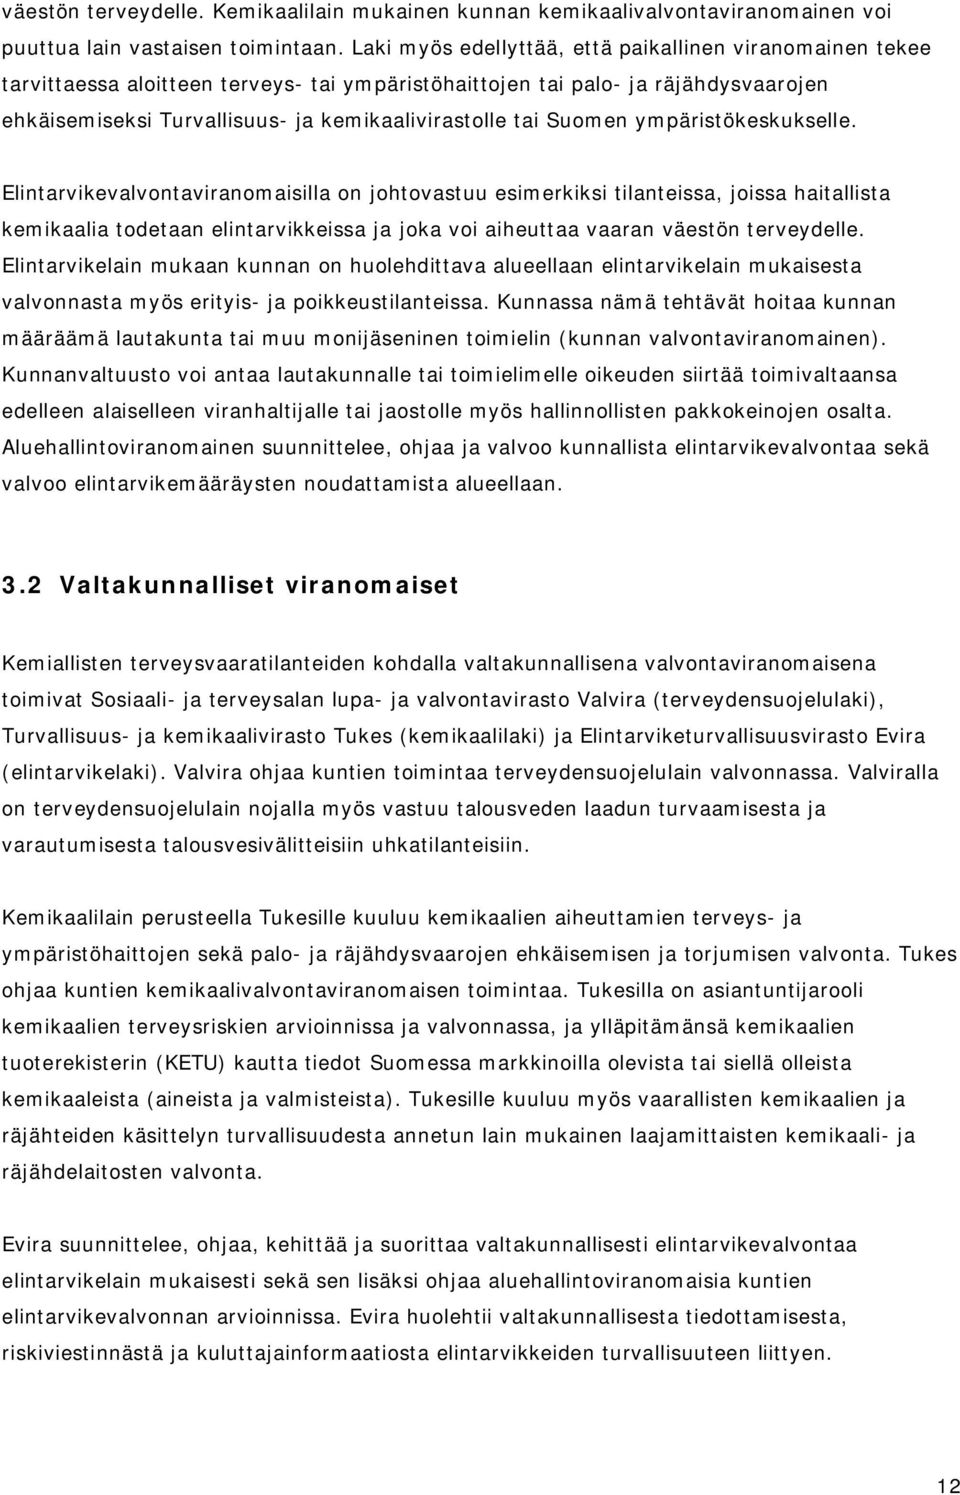 Suomen ympäristökeskukselle.